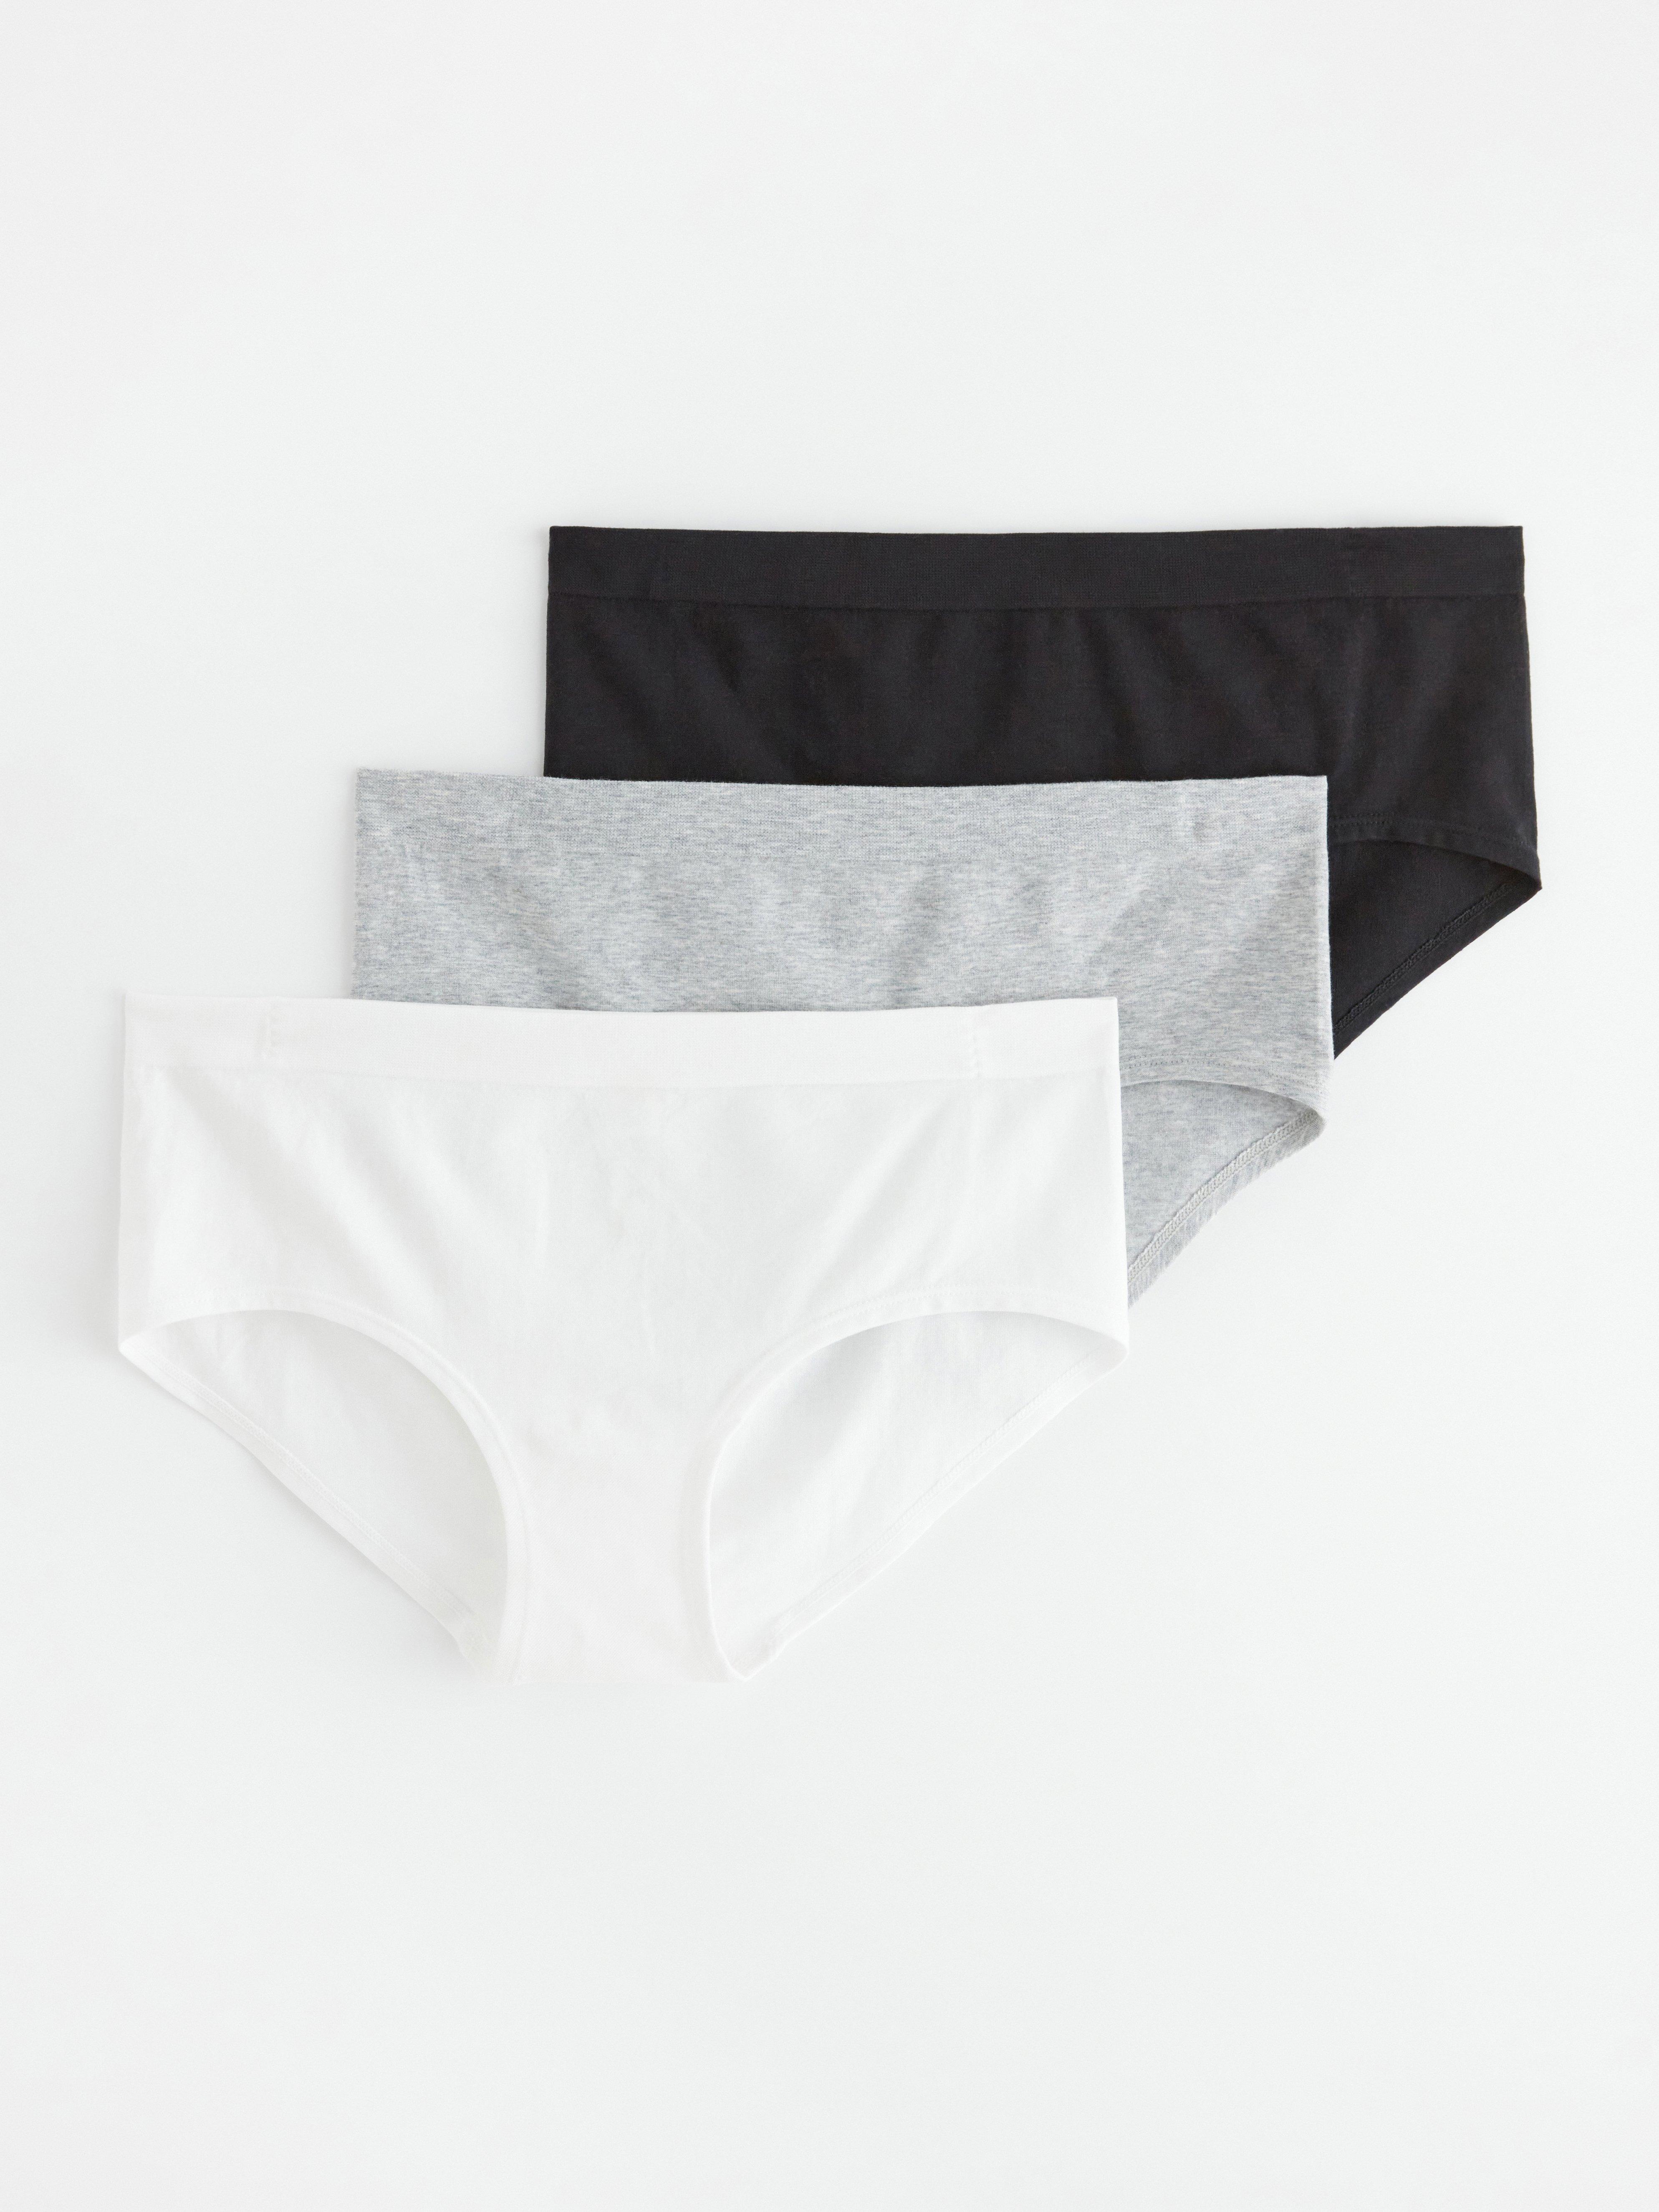 Seamless Cotton Briefs For Women Set Of 3 Black Underwear With